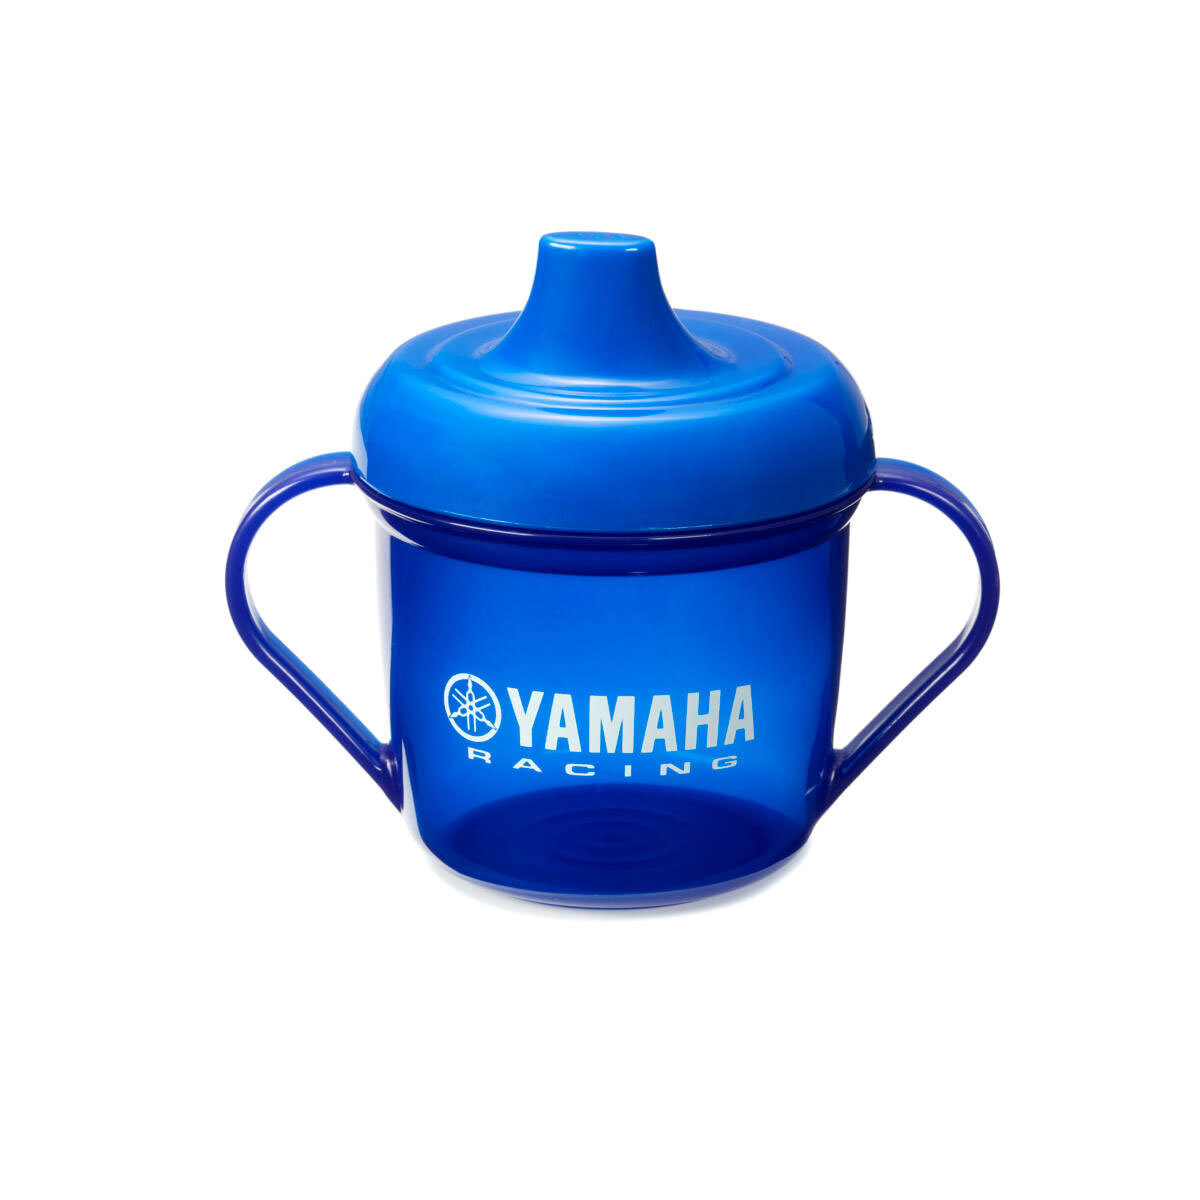 Yamaha Paddock Baby Bib Gift Pack